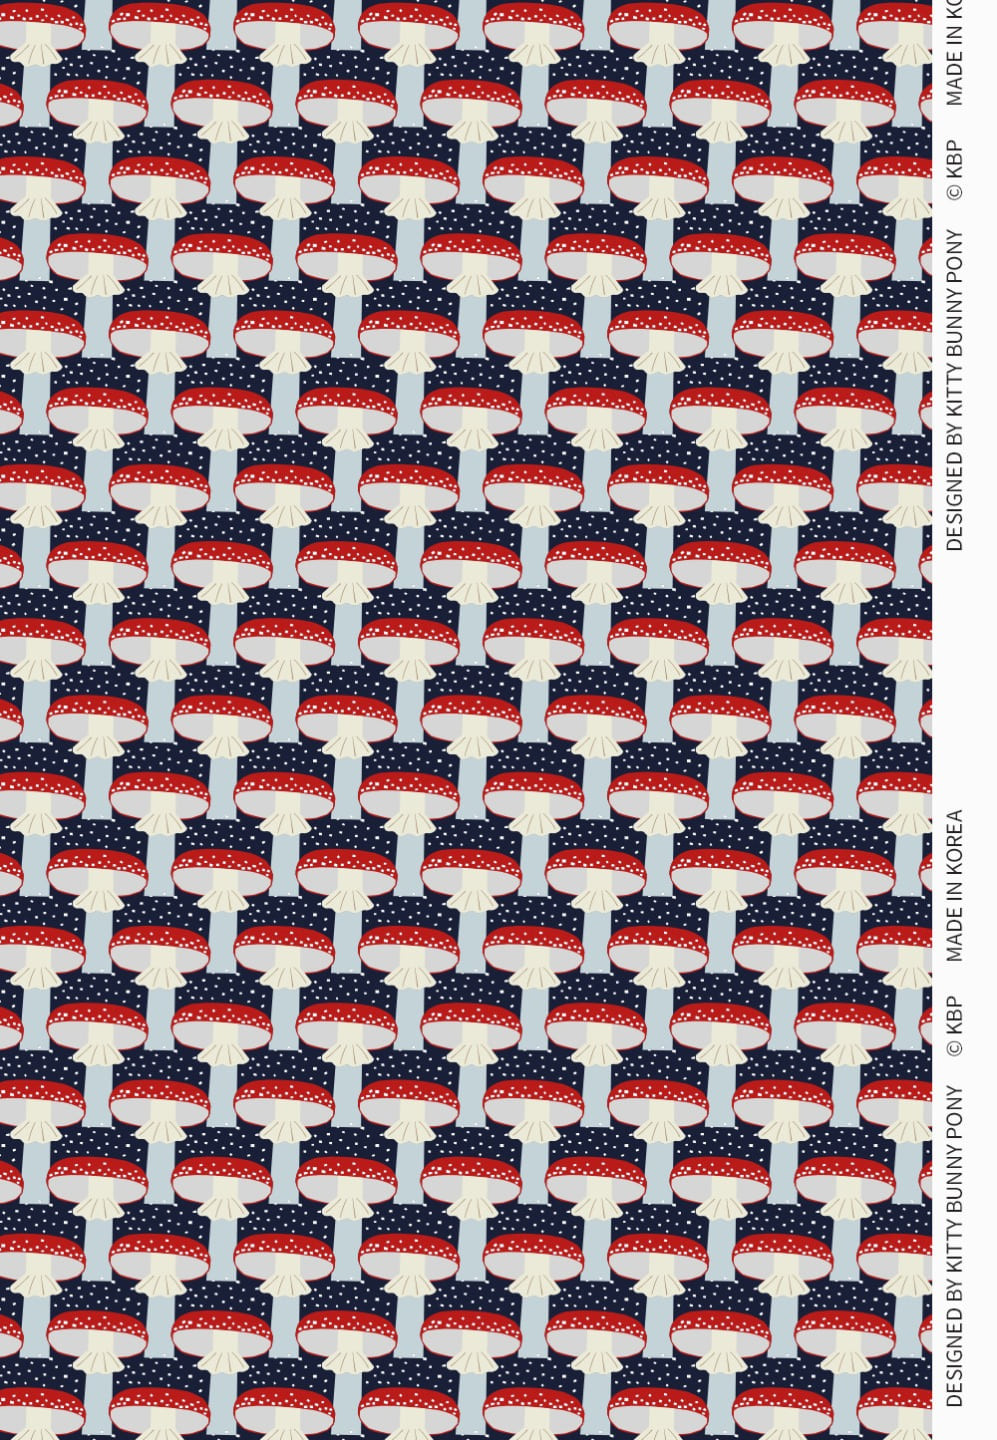 KBP Fabrics Muscaria Fabric by Makitoy 무스카리아 원단 by 마키토이